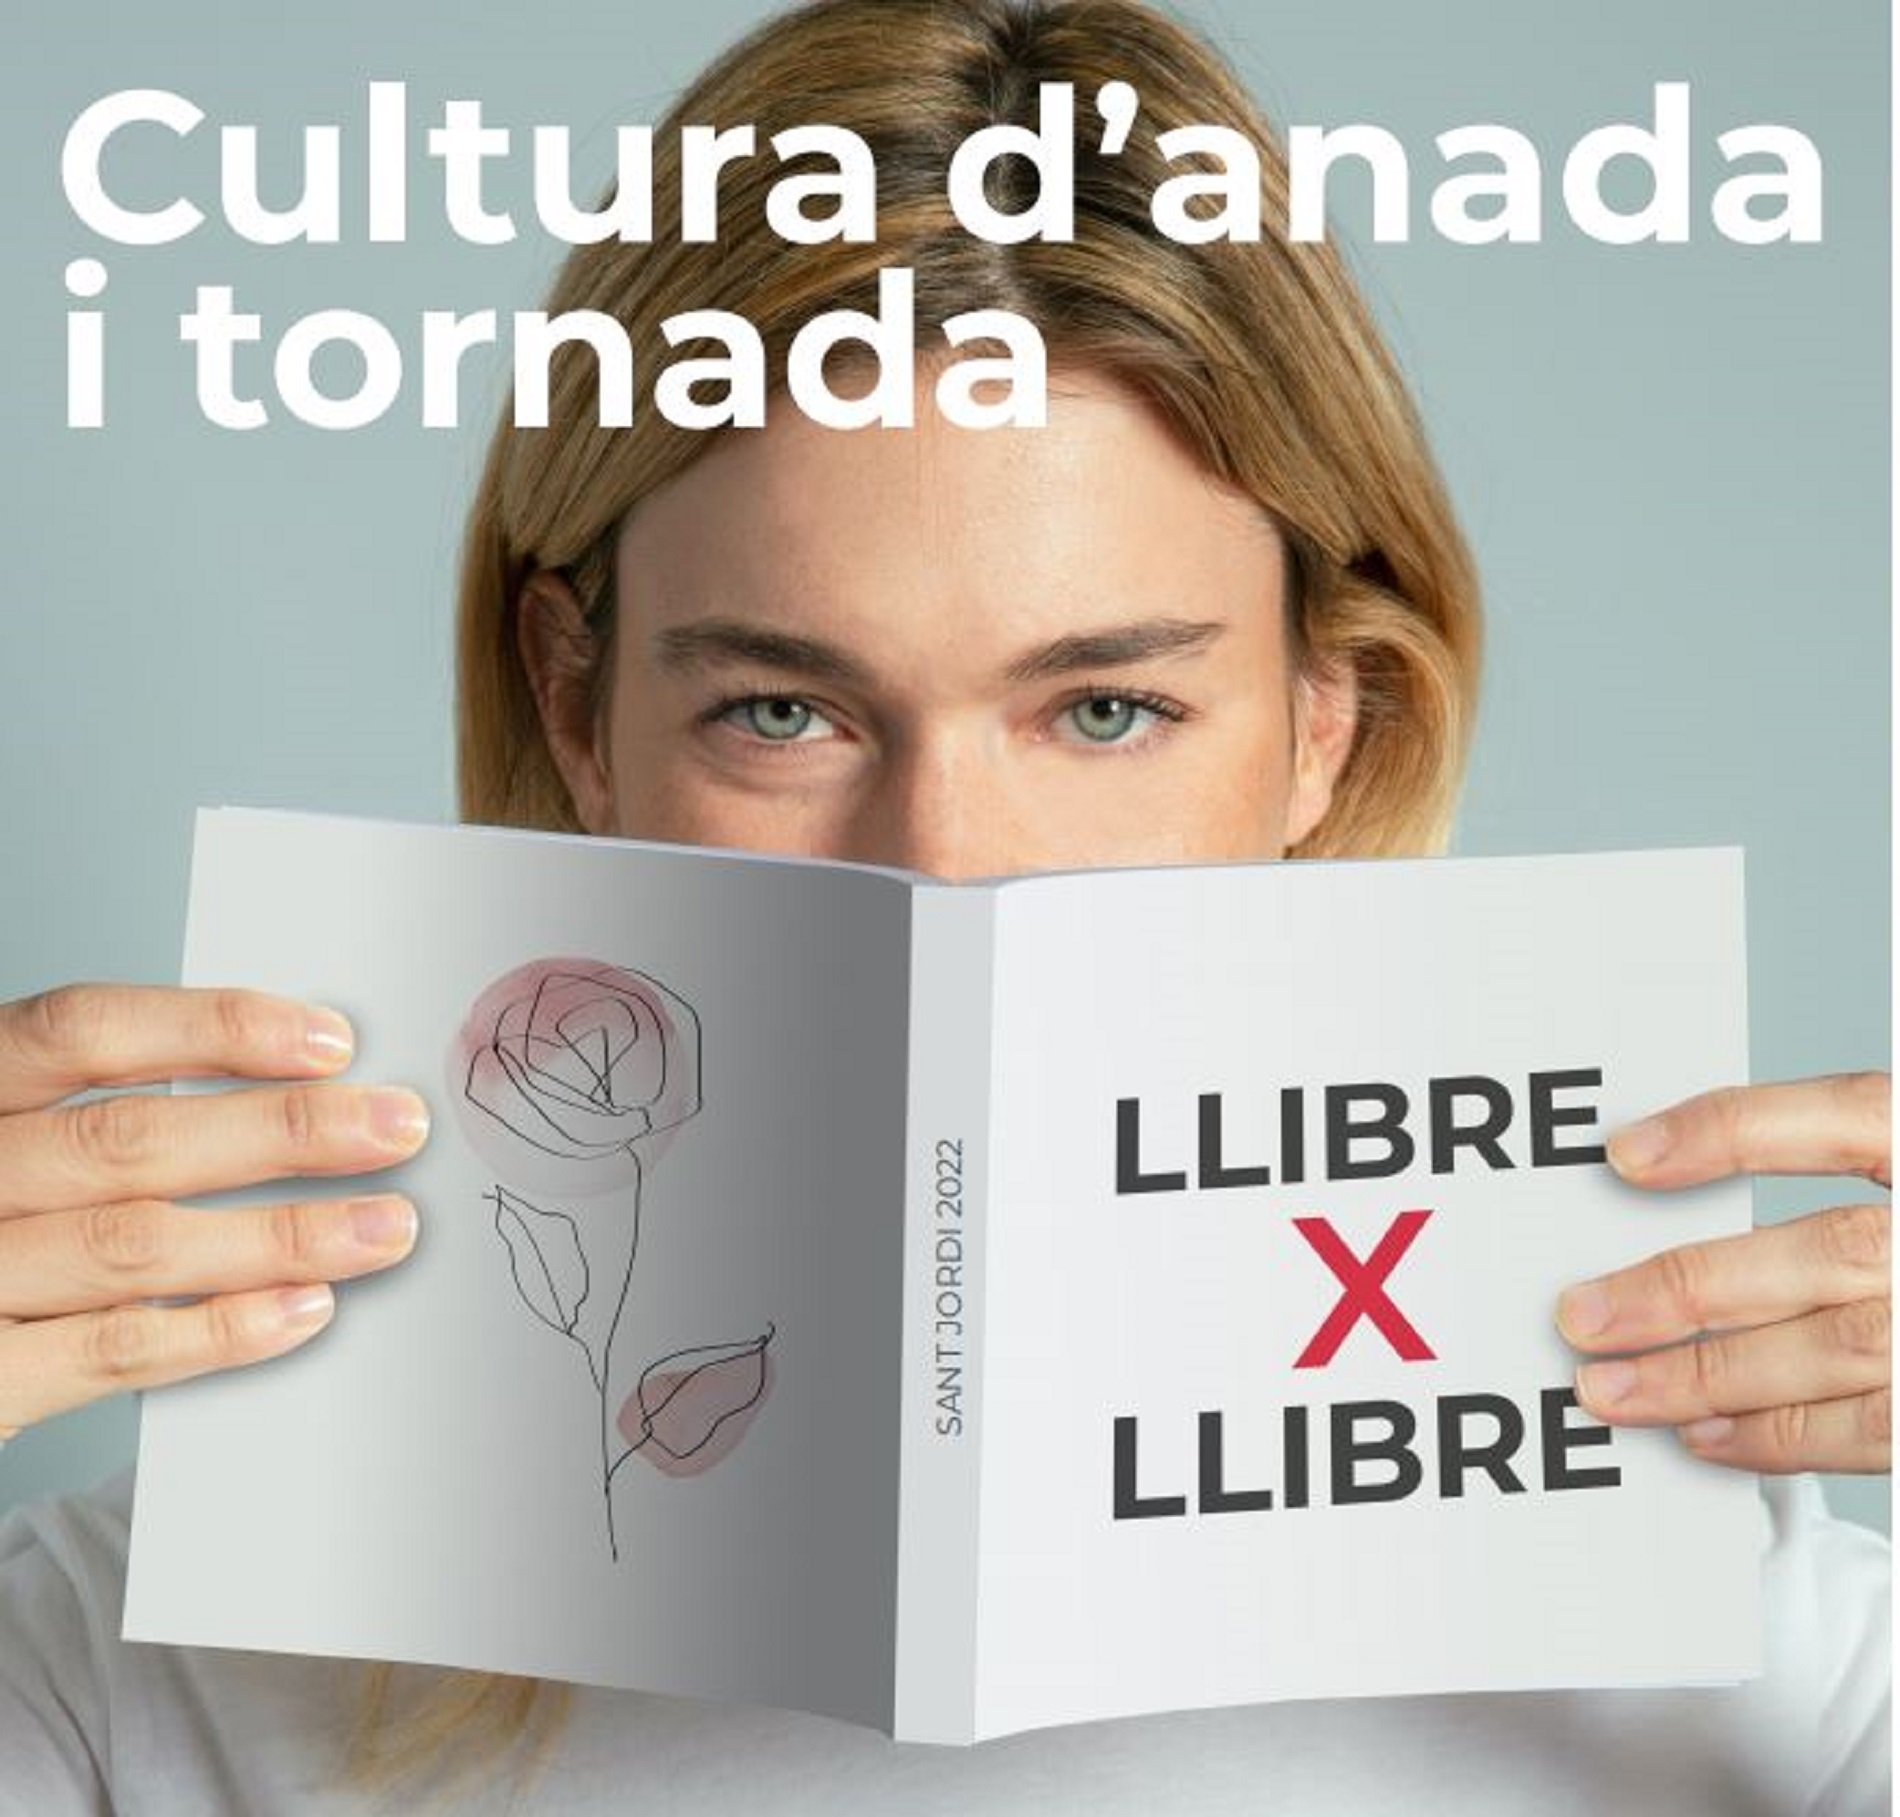 Más de 500 libros gratis por Sant Jordi 2022 en los FGC gracias al bookcrossing